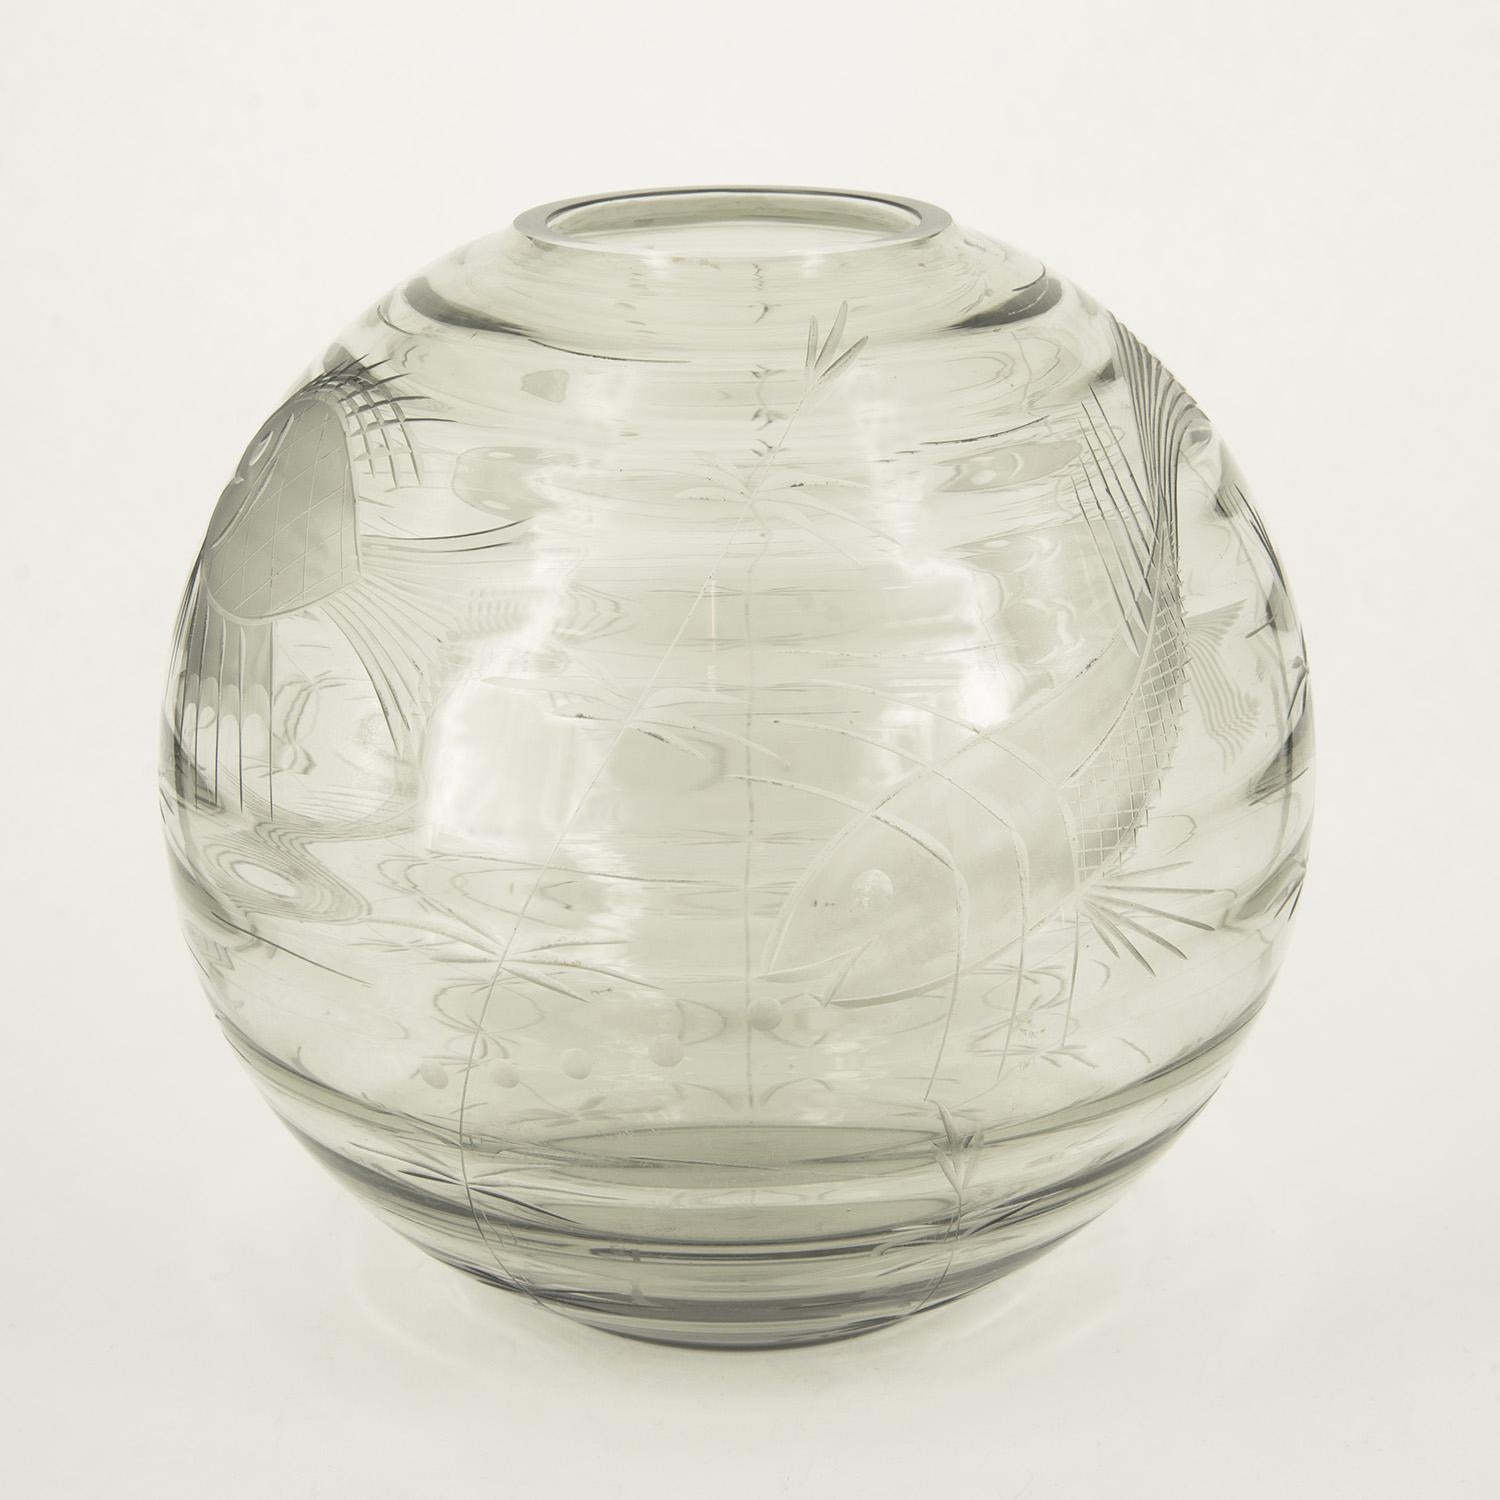 Inusuale vaso in vetro di Murano incolore inciso con motivi marini, la forma sferica richiama la boule per i pesci rossi. La ricca decorazione è ottenuta tramite incisione alla mola ed è ascrivibile alla produzione di S.A.L.I.R. a cavallo tra gli